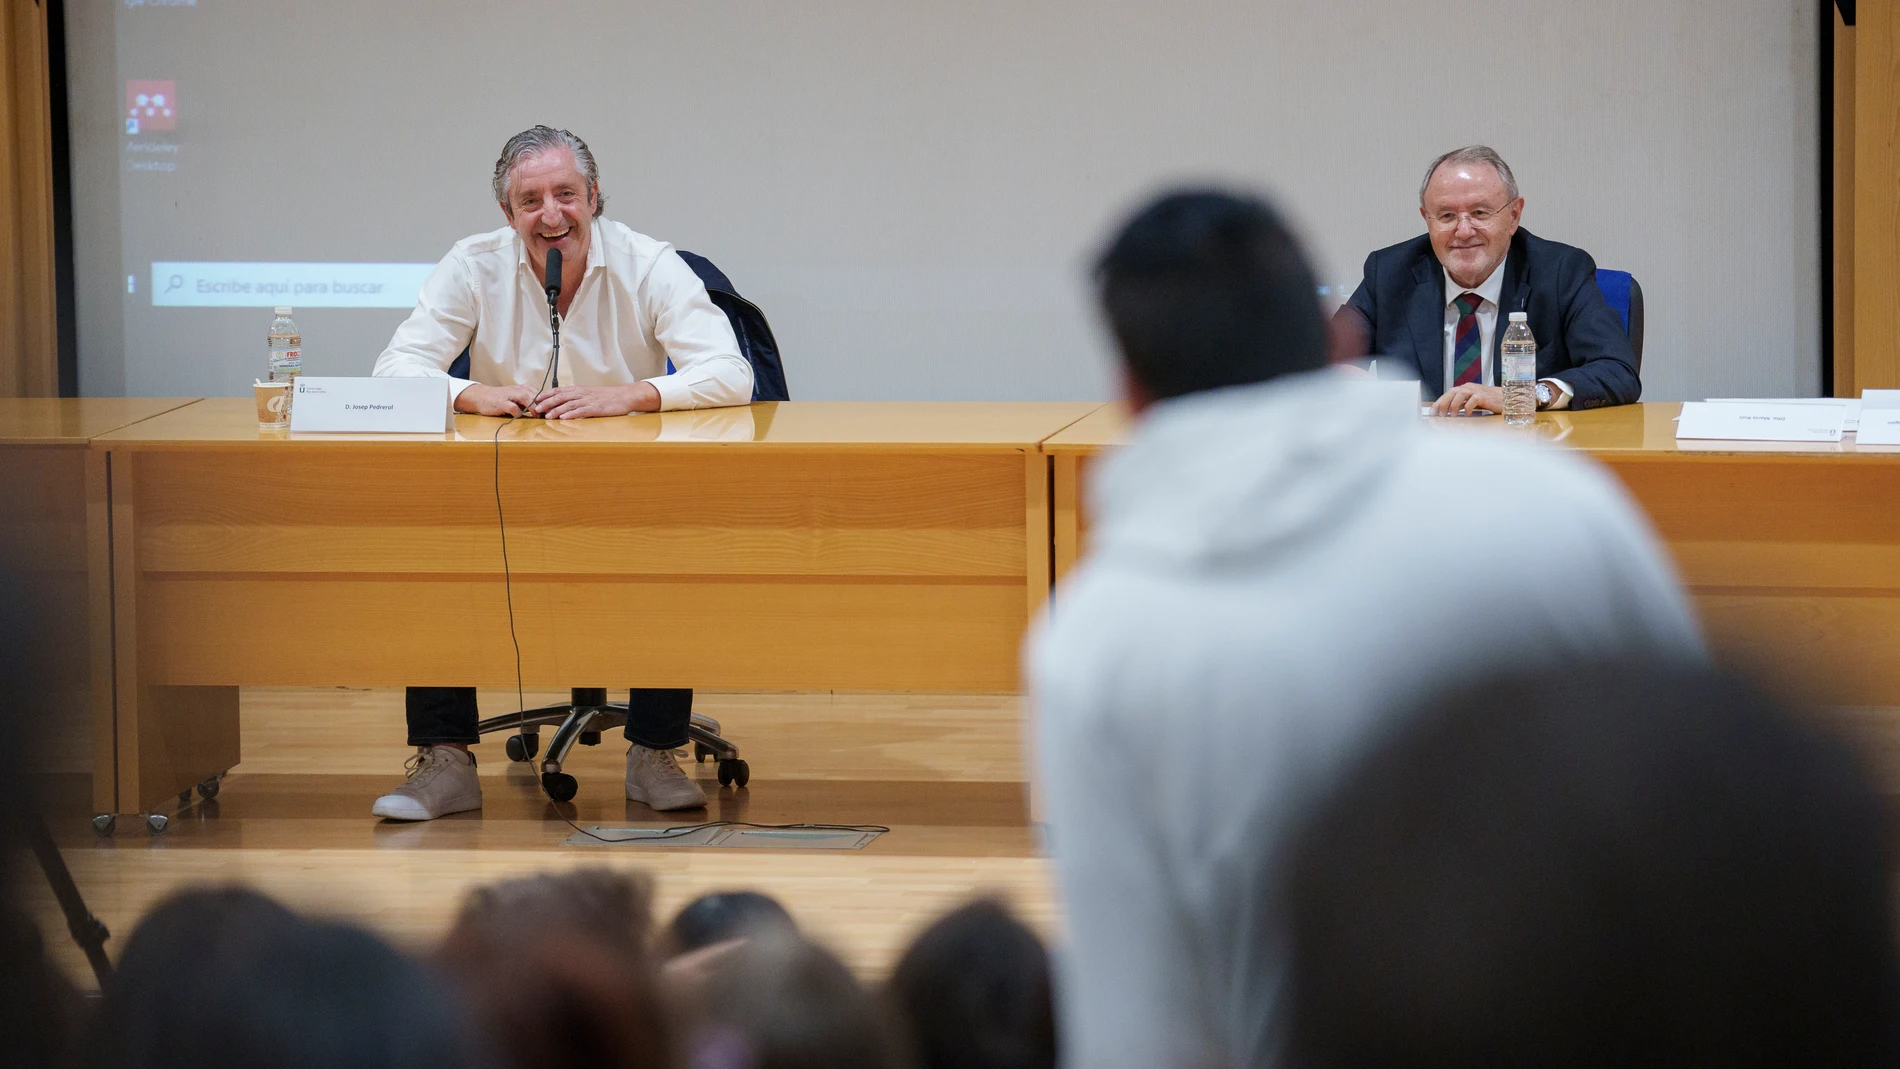 Josep Pedrerol en una charla en la Universidad Rey Juan Carlos.